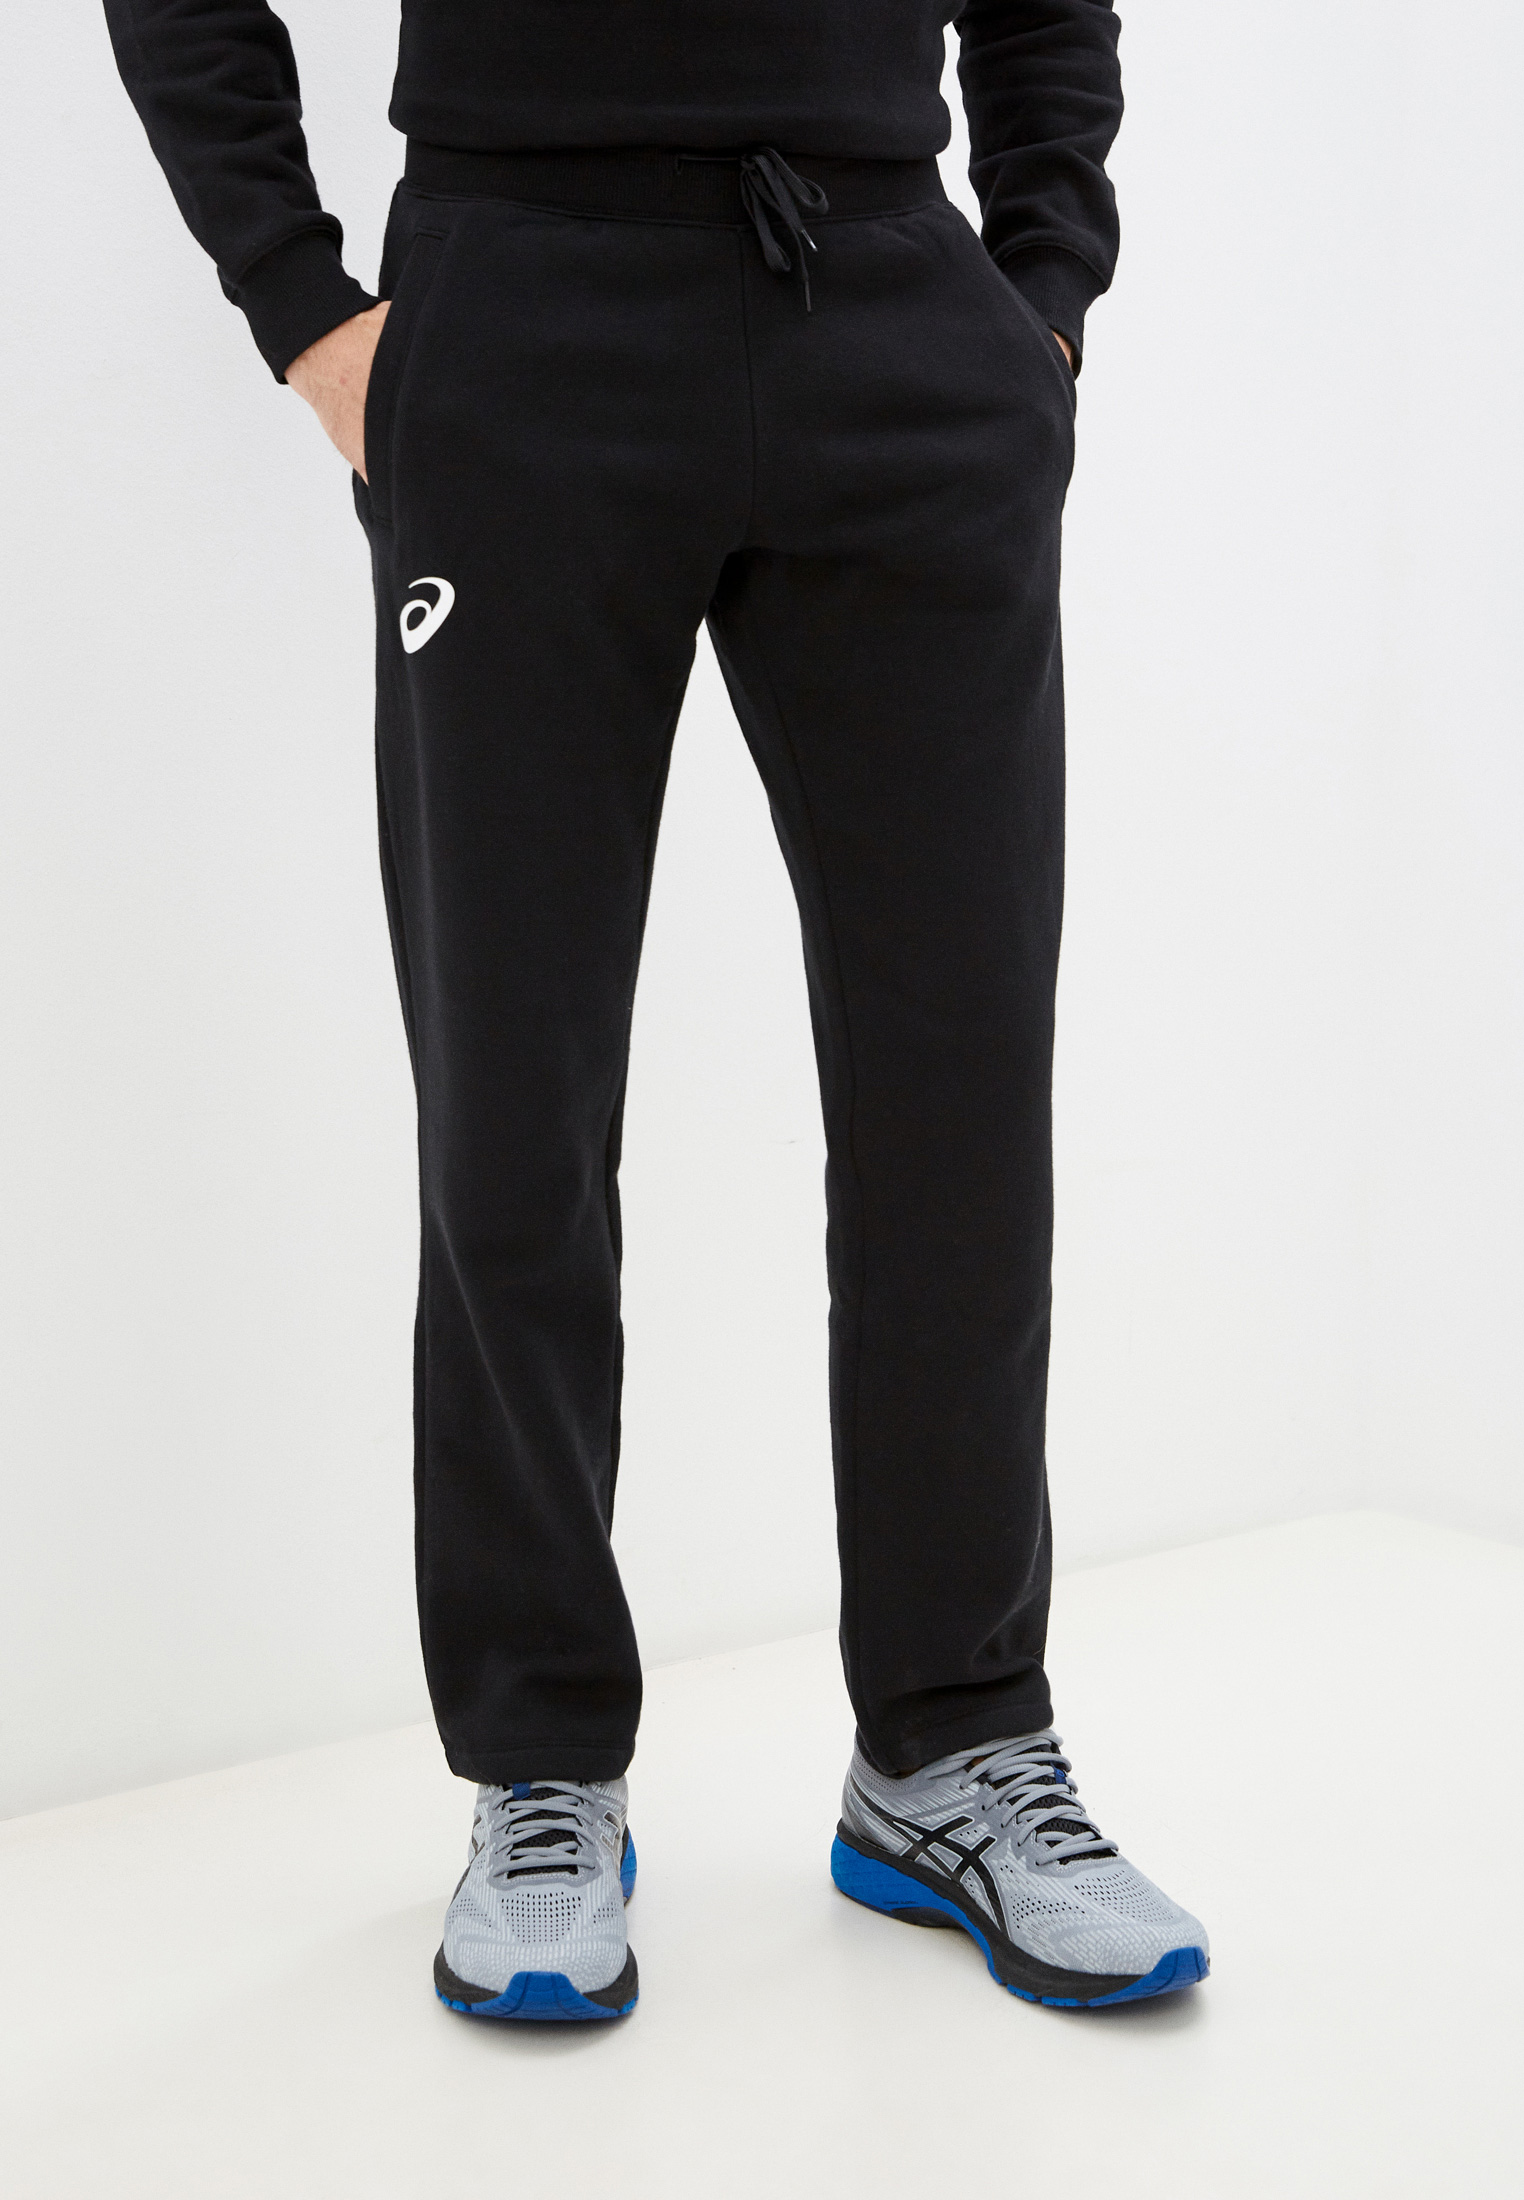 Мужские спортивные брюки Asics (Асикс) 156858 цвет черный купить за 3990руб.